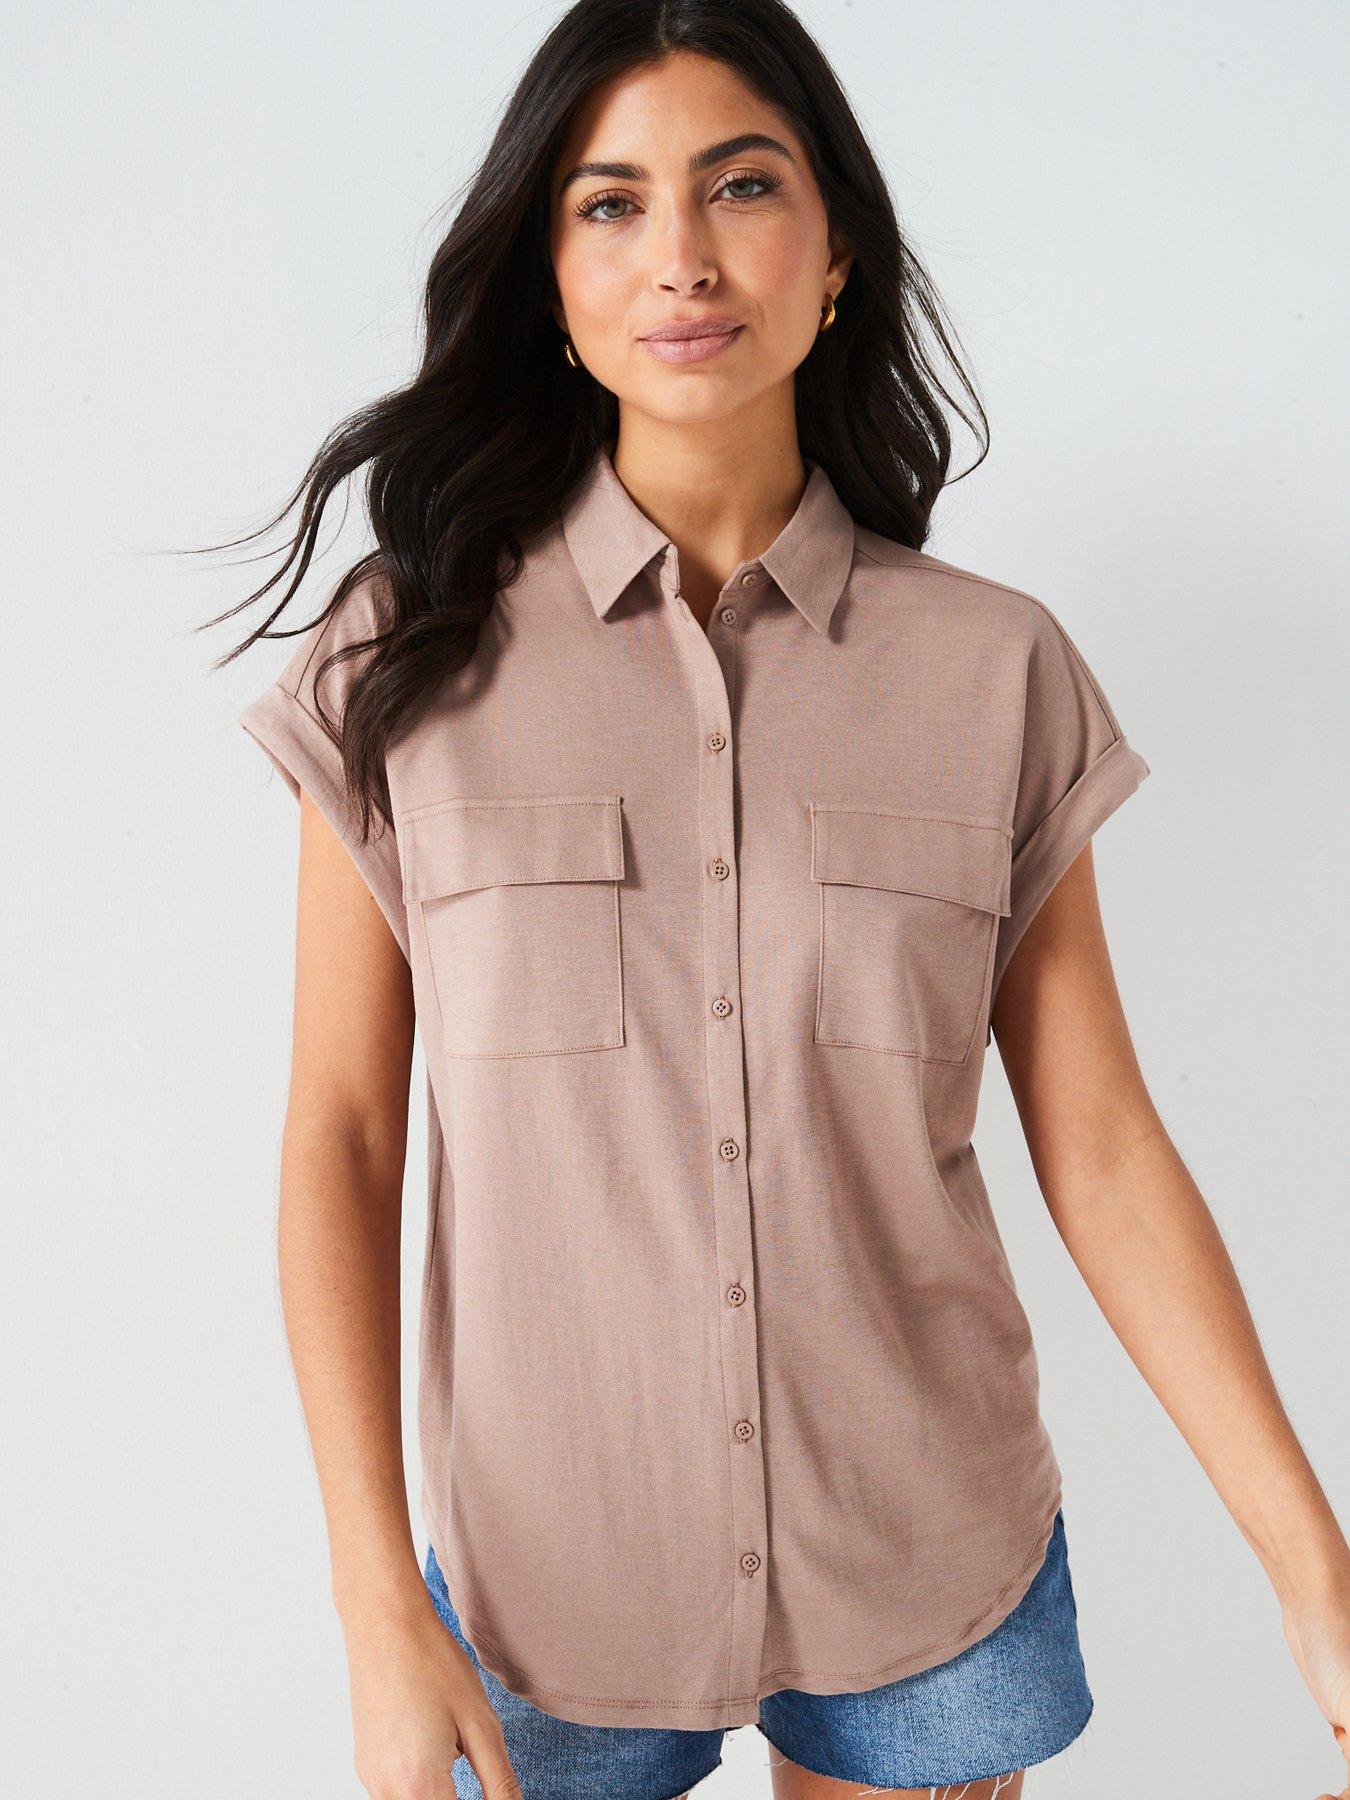 Brown, Tops & t-shirts, Women